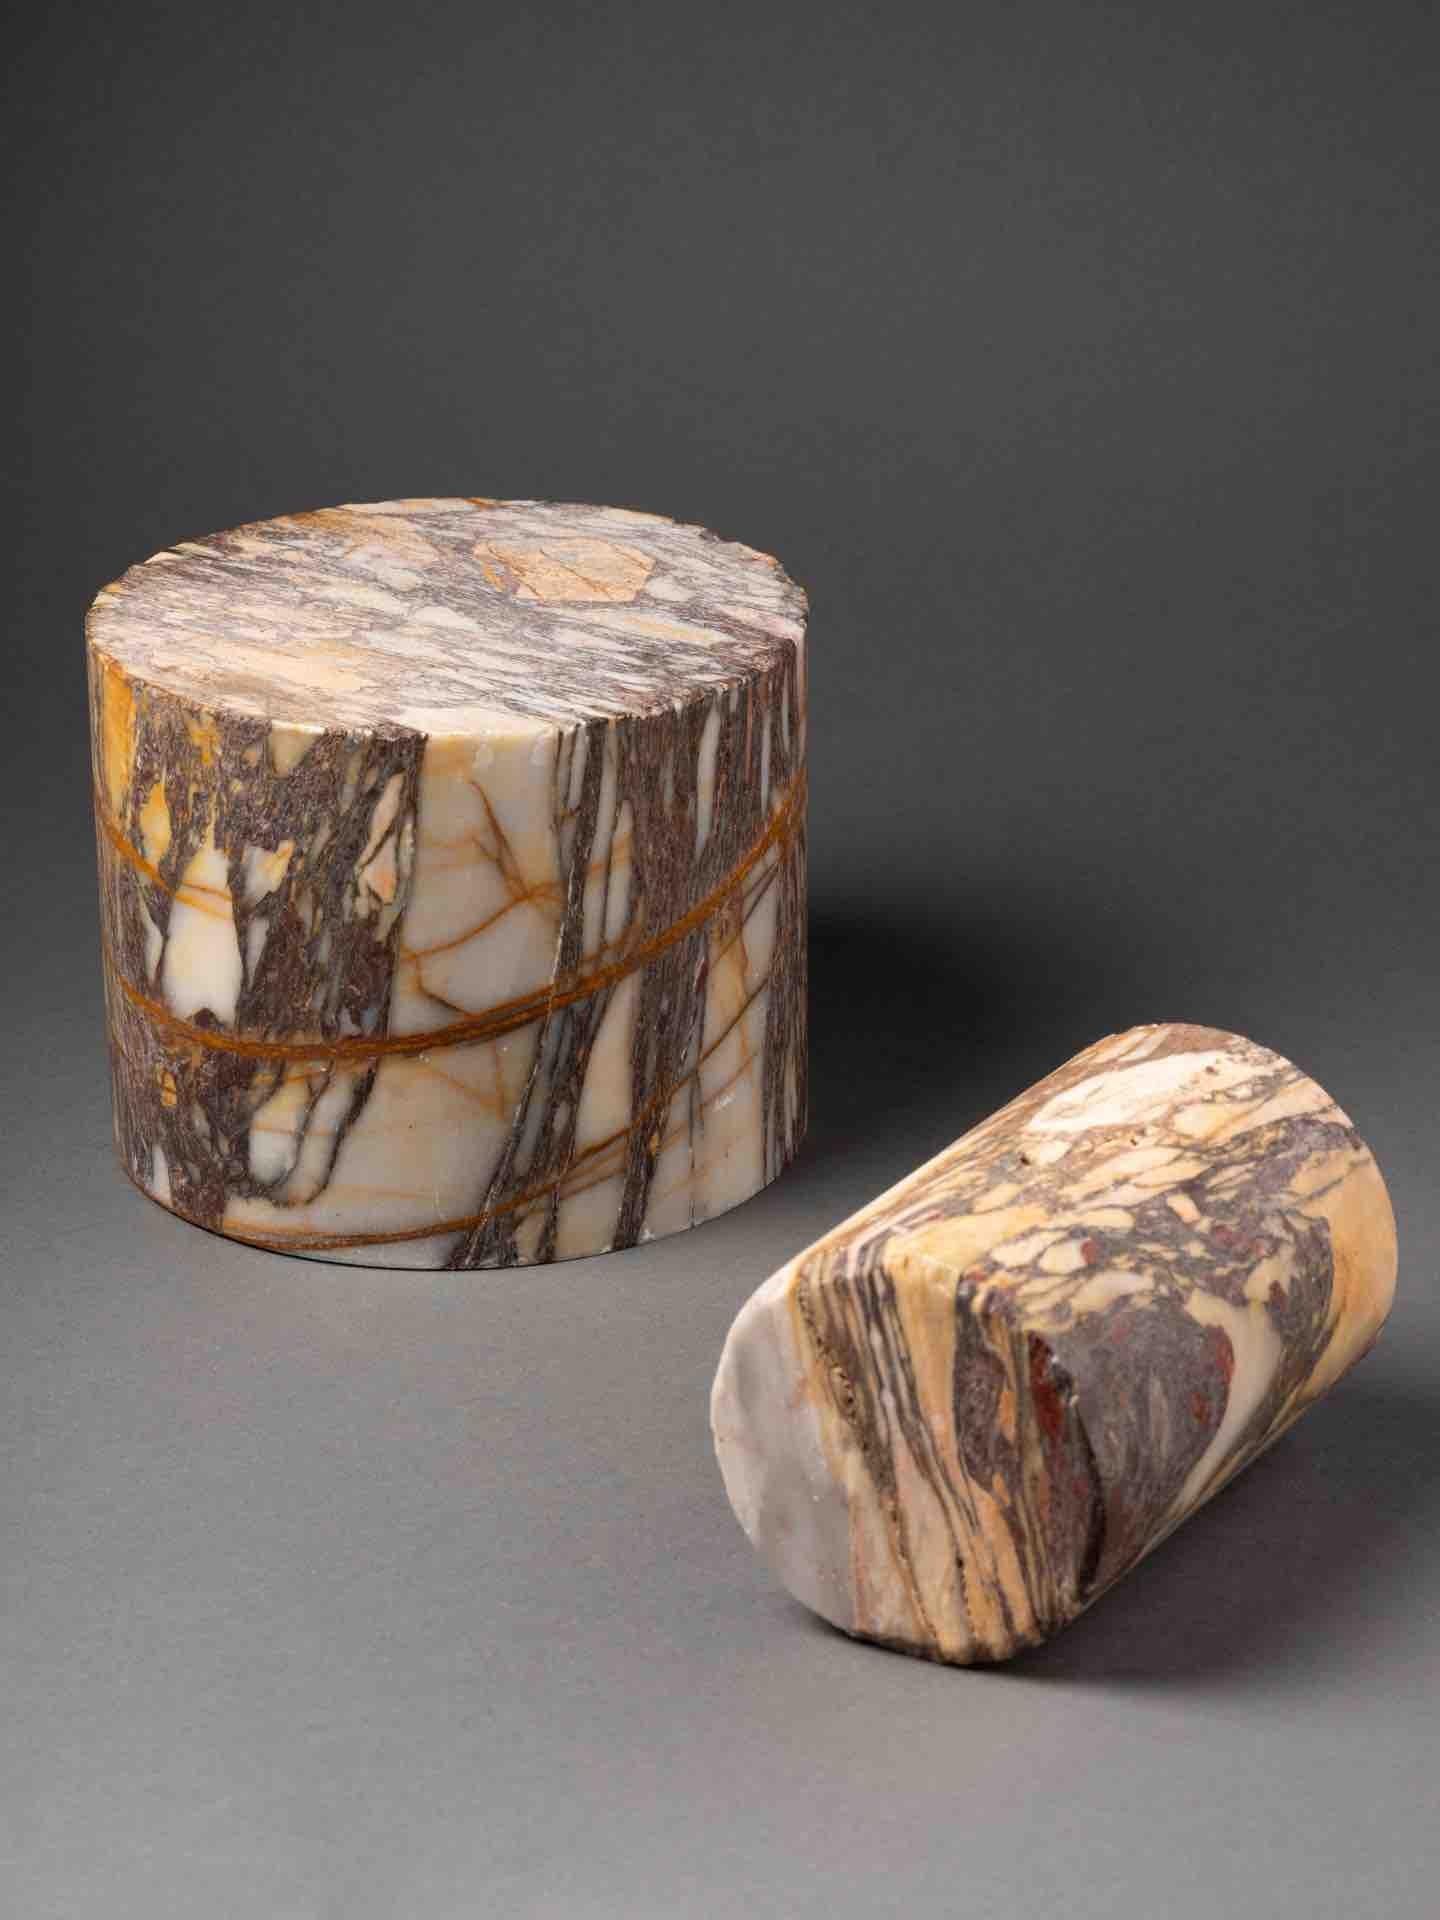 Zwei zylindrische Exemplare aus Breccia Skyros Marmor oder Settebassi

Diese beiden zylindrischen Exemplare eignen sich hervorragend als Buchstützen oder als Geschenk für Kunstwerke. 
Der Name stammt von dem Stein, der in der Antike auf der Insel